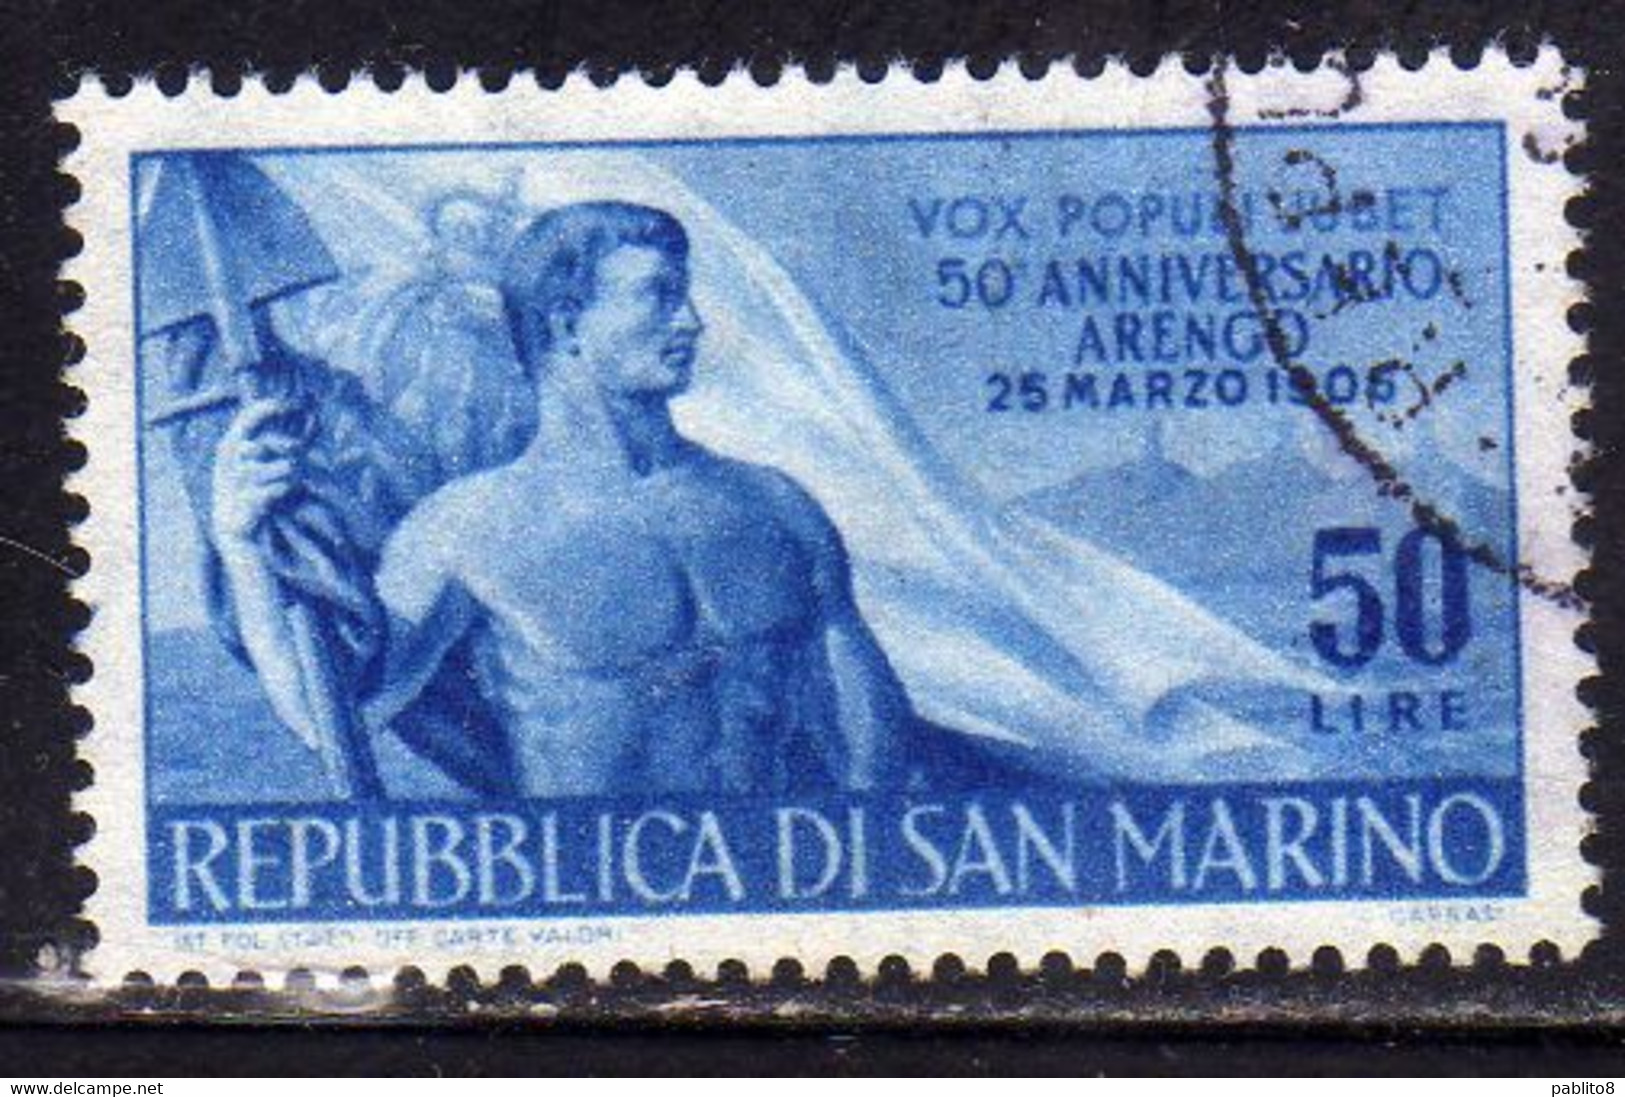 REPUBBLICA DI SAN MARINO 1956 CINQUANTENARIO DEL RIPRISTINO ARENGO LIRE 50 USATO USED OBLITERE' - Usati